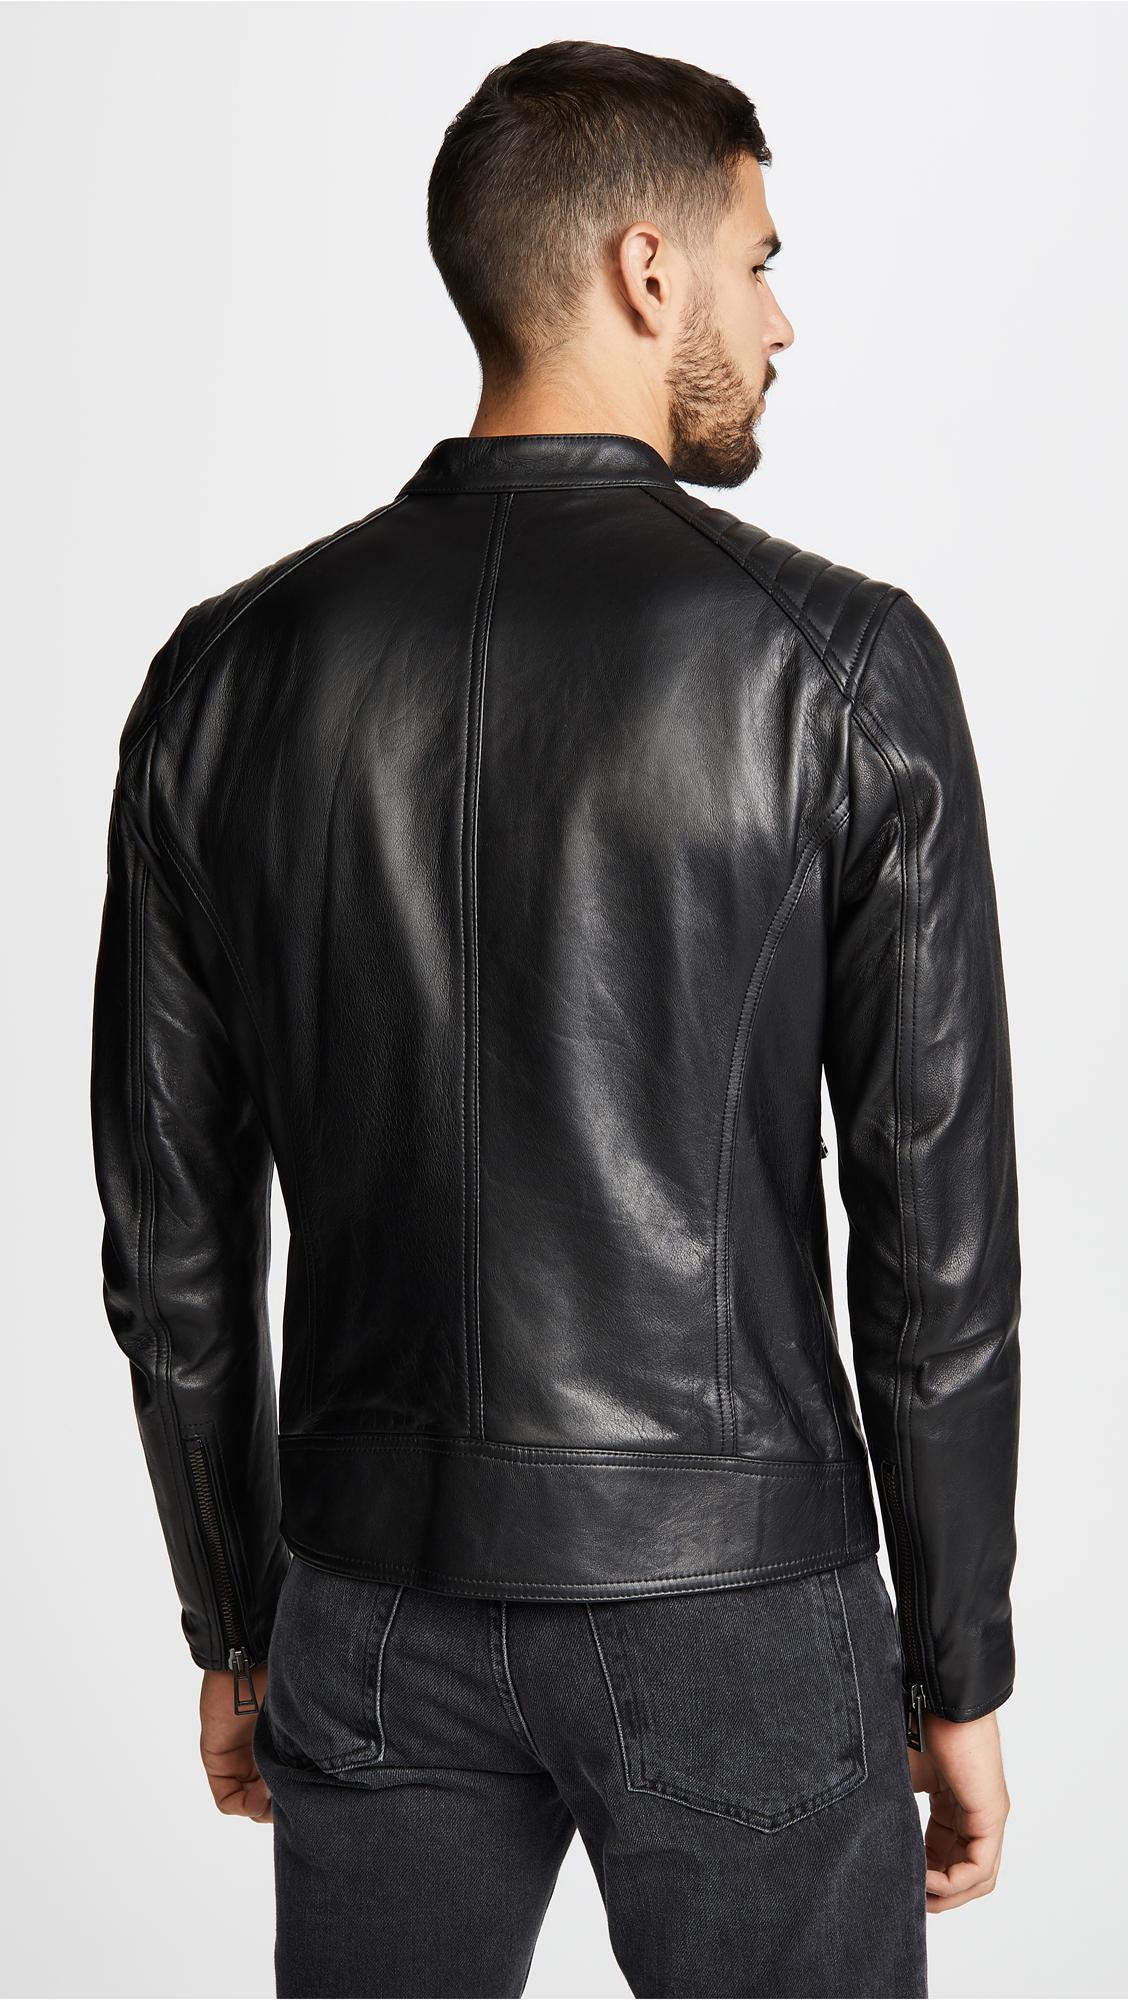 Belstaff V Racer Leather Jacket in Black for Men - Lyst